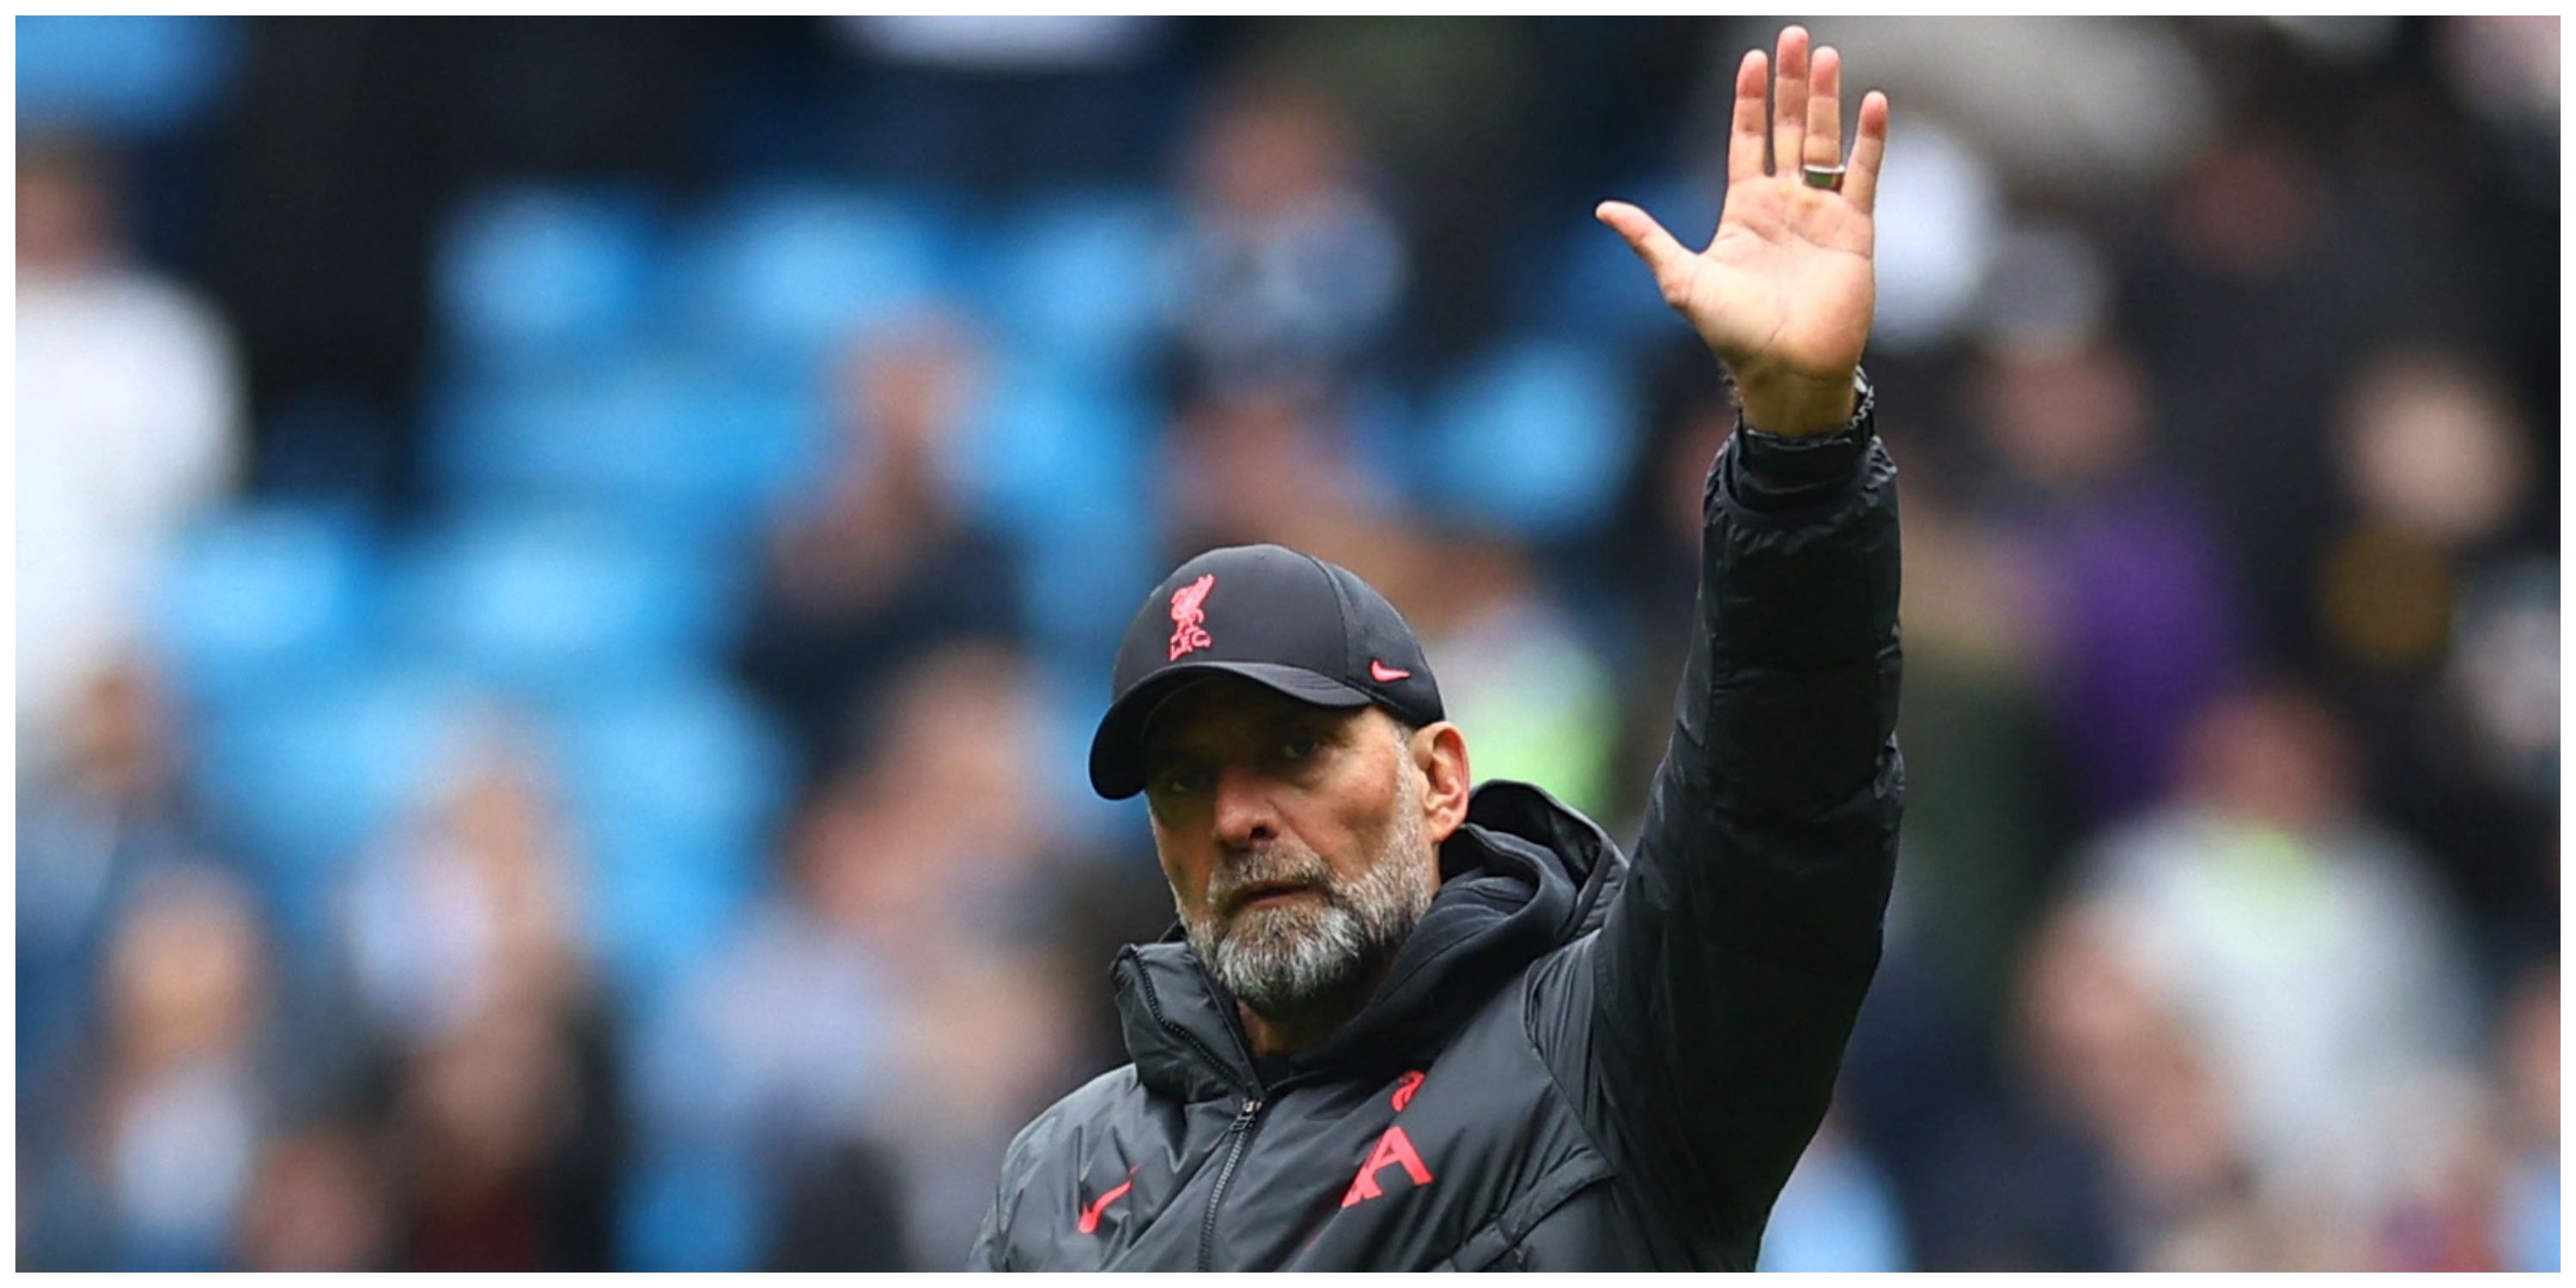 Liverpool manager Jurgen Klopp waving